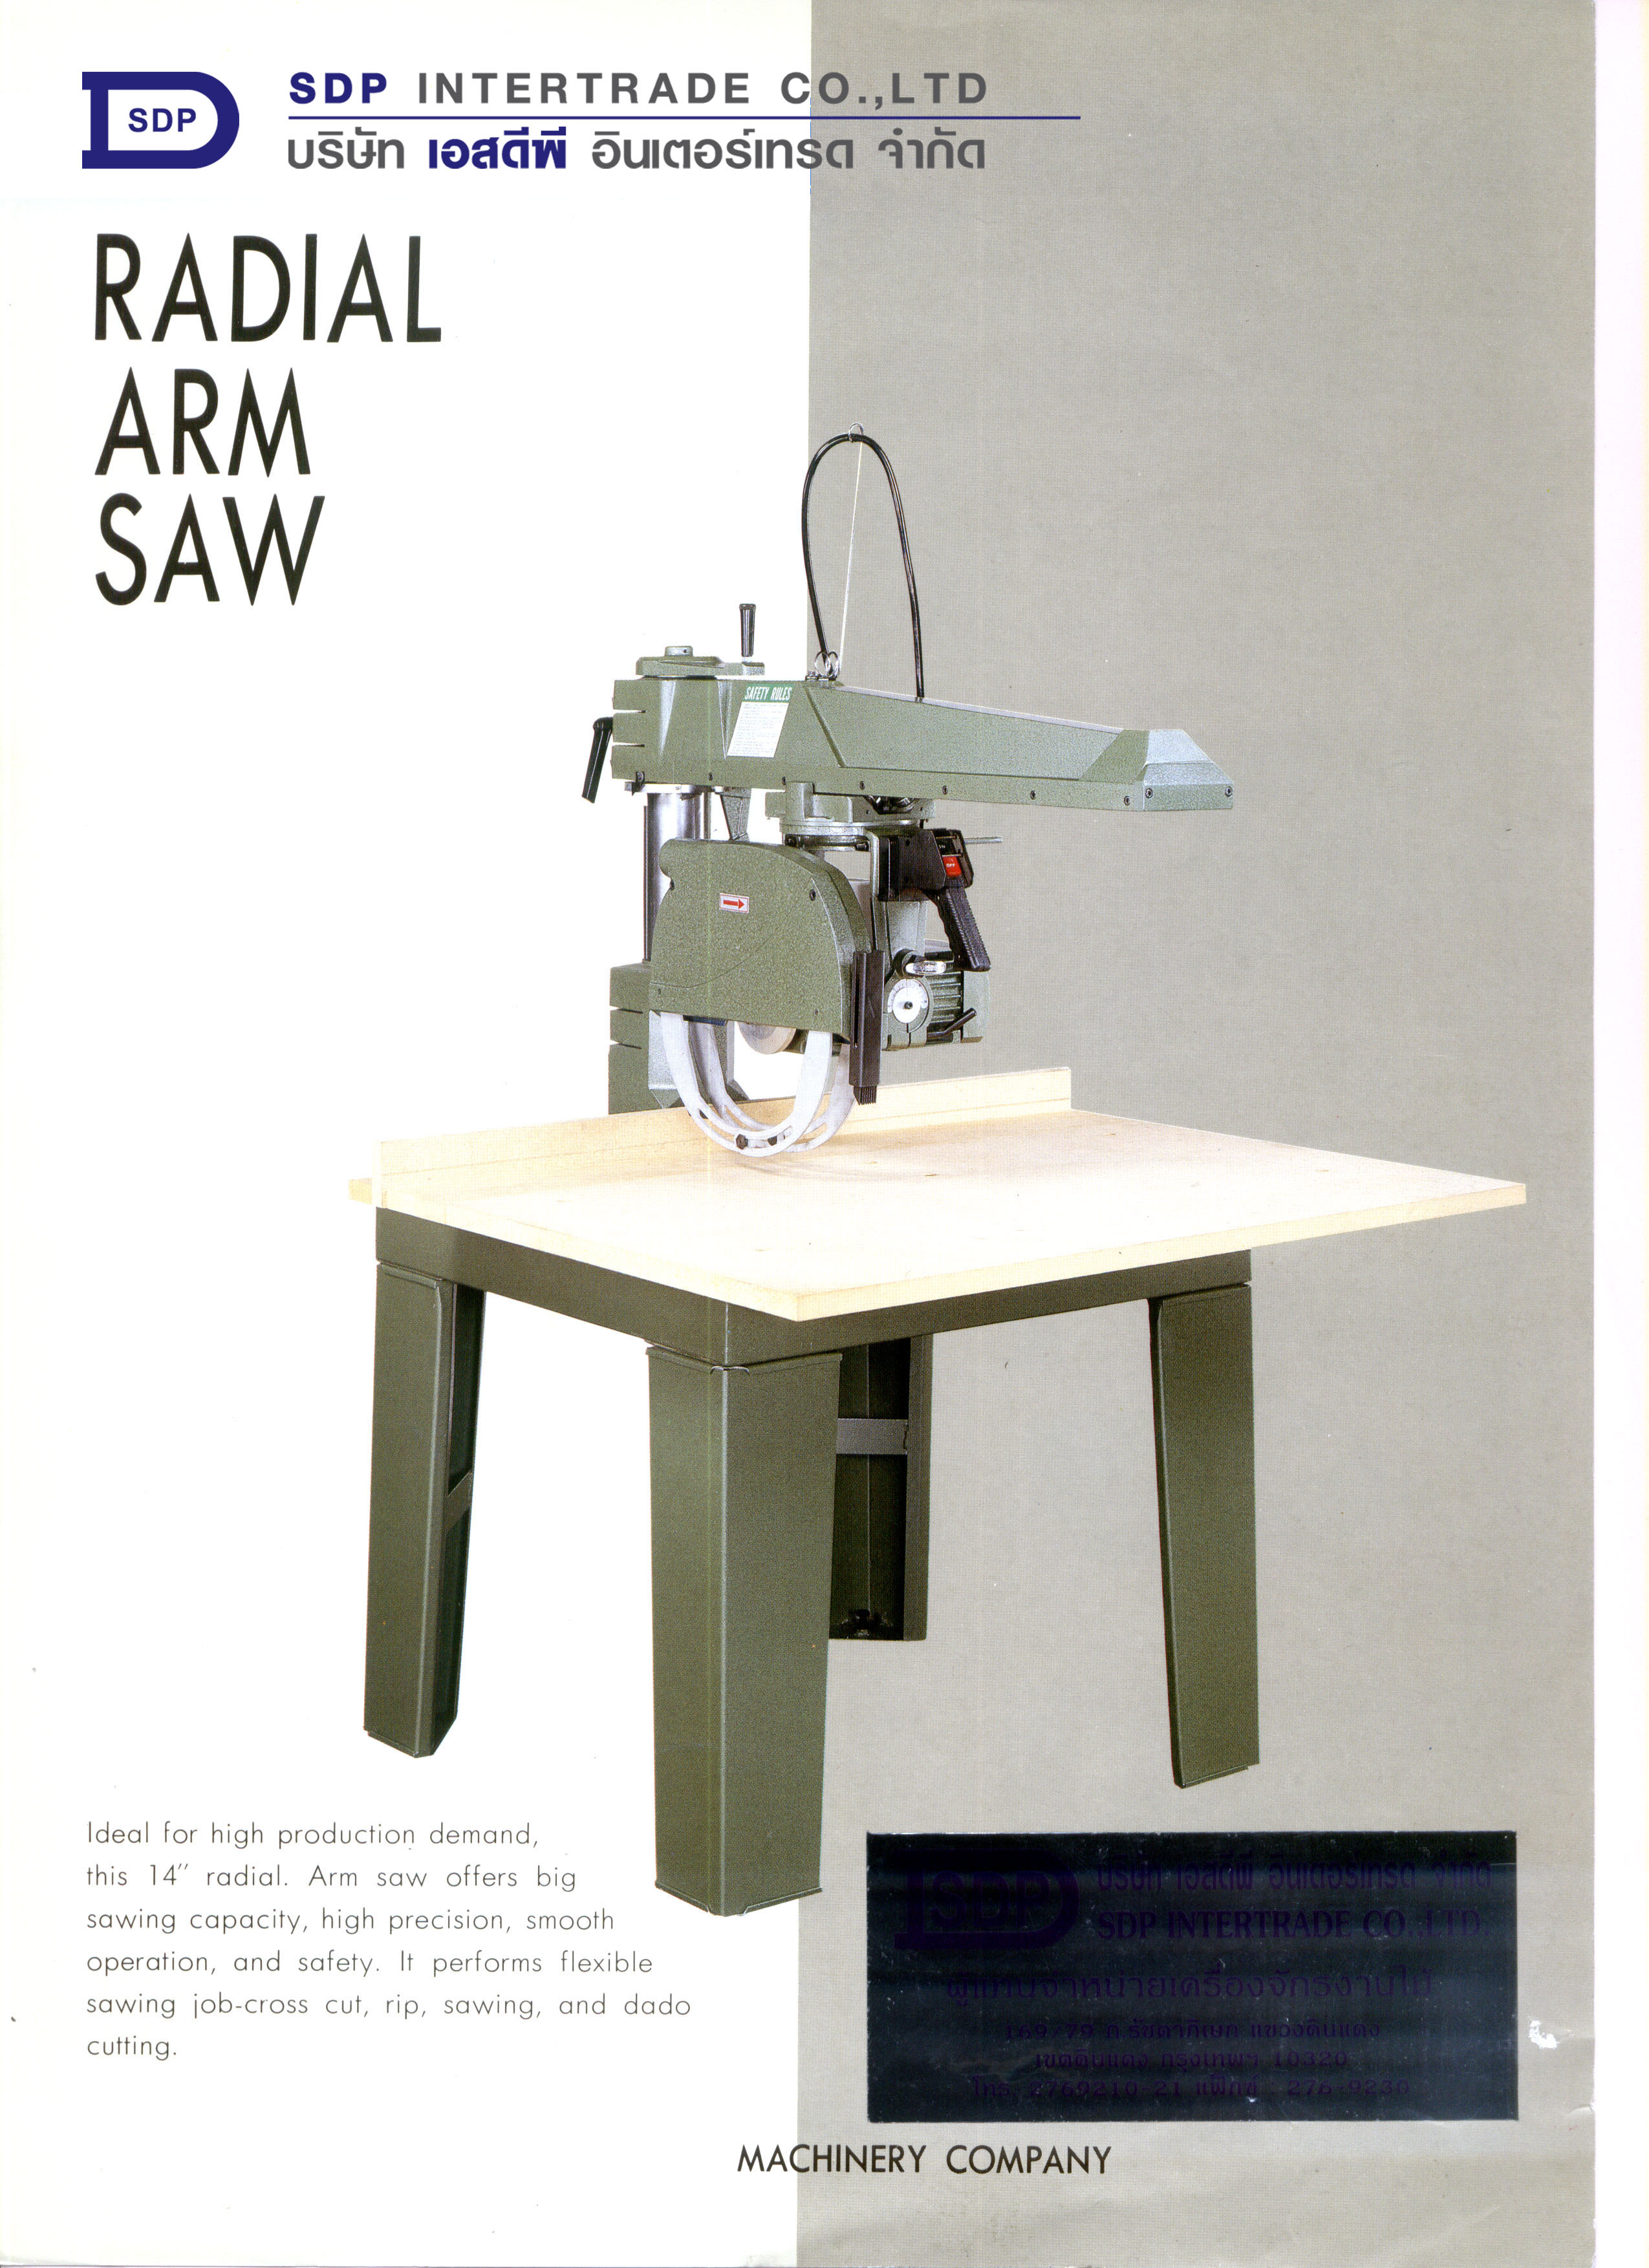 Radial Arm saw, table saw, Sliding table saw, โต๊ะตัดไม้, โต๊ะเลื่อยไม้, โต๊ะซอยไม้, เลื่อยมือชัก